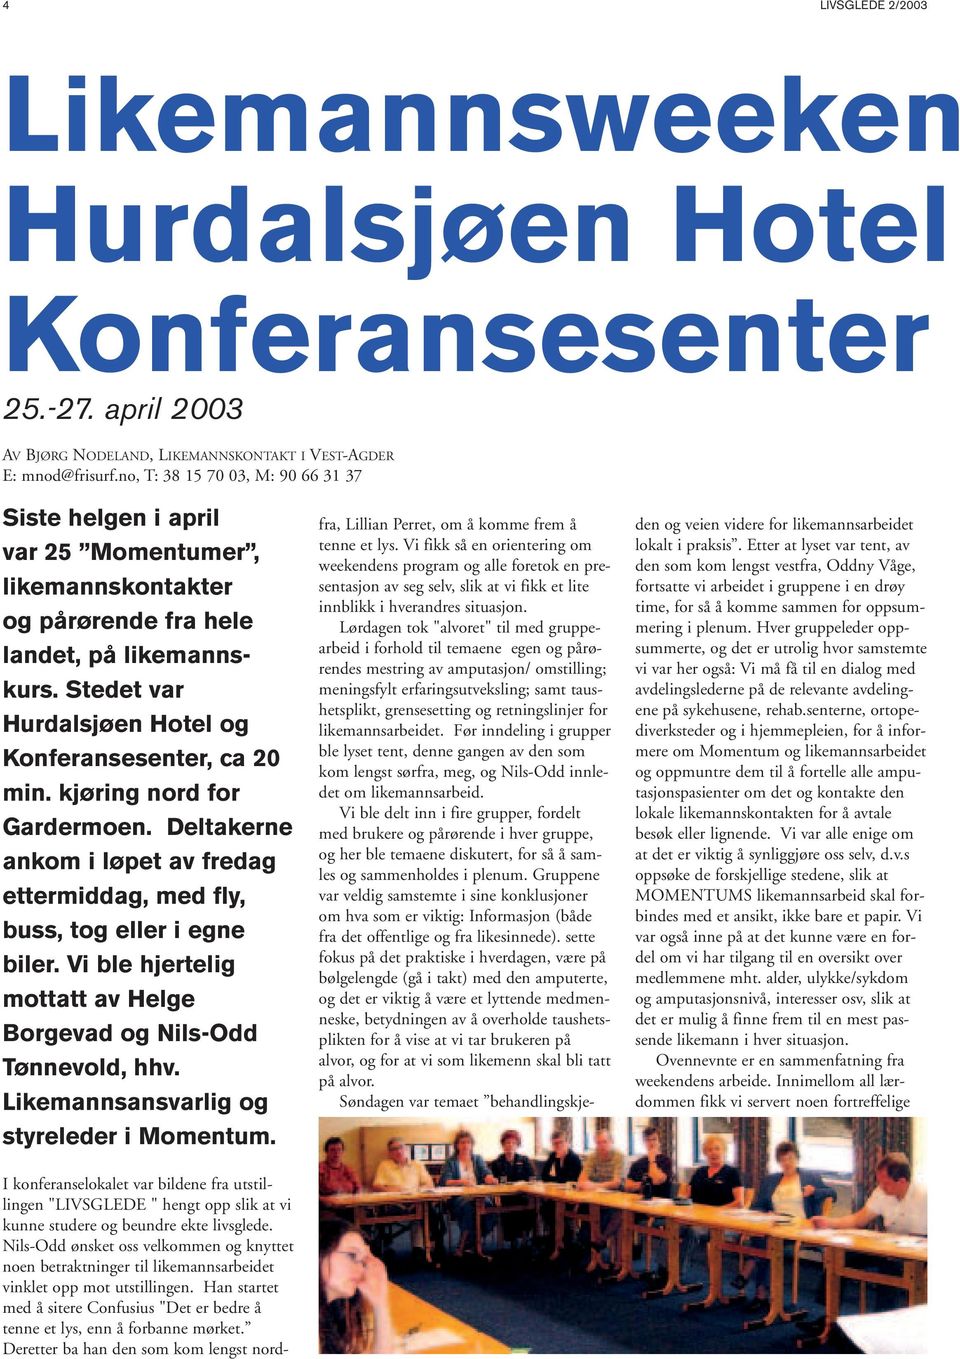 Stedet var Hurdalsjøen Hotel og Konferansesenter, ca 20 min. kjøring nord for Gardermoen. Deltakerne ankom i løpet av fredag ettermiddag, med fly, buss, tog eller i egne biler.